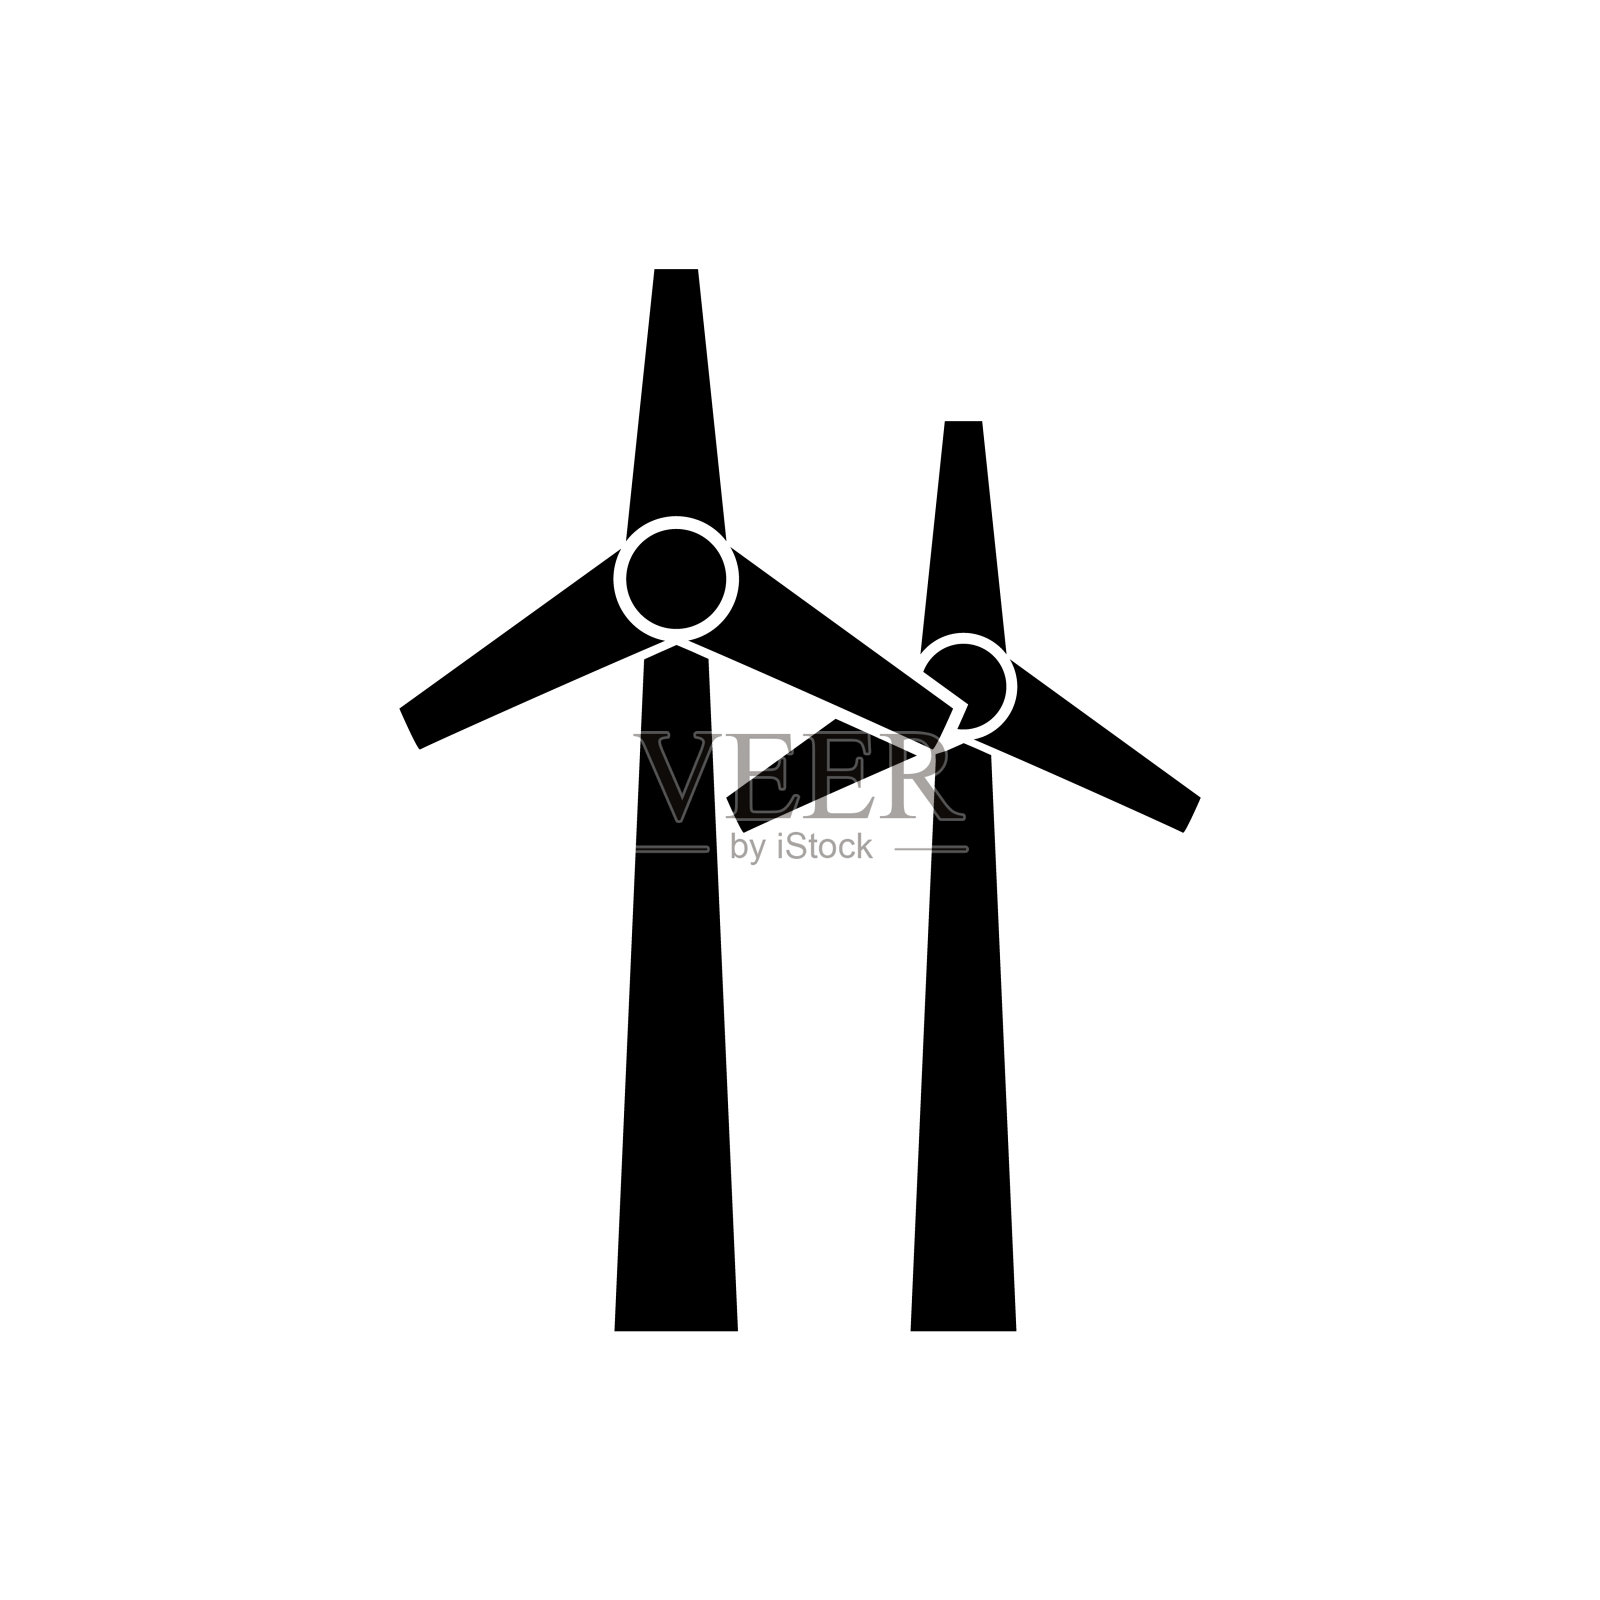 风力矢量图标素材 Wind thinline icons - 云瑞设计